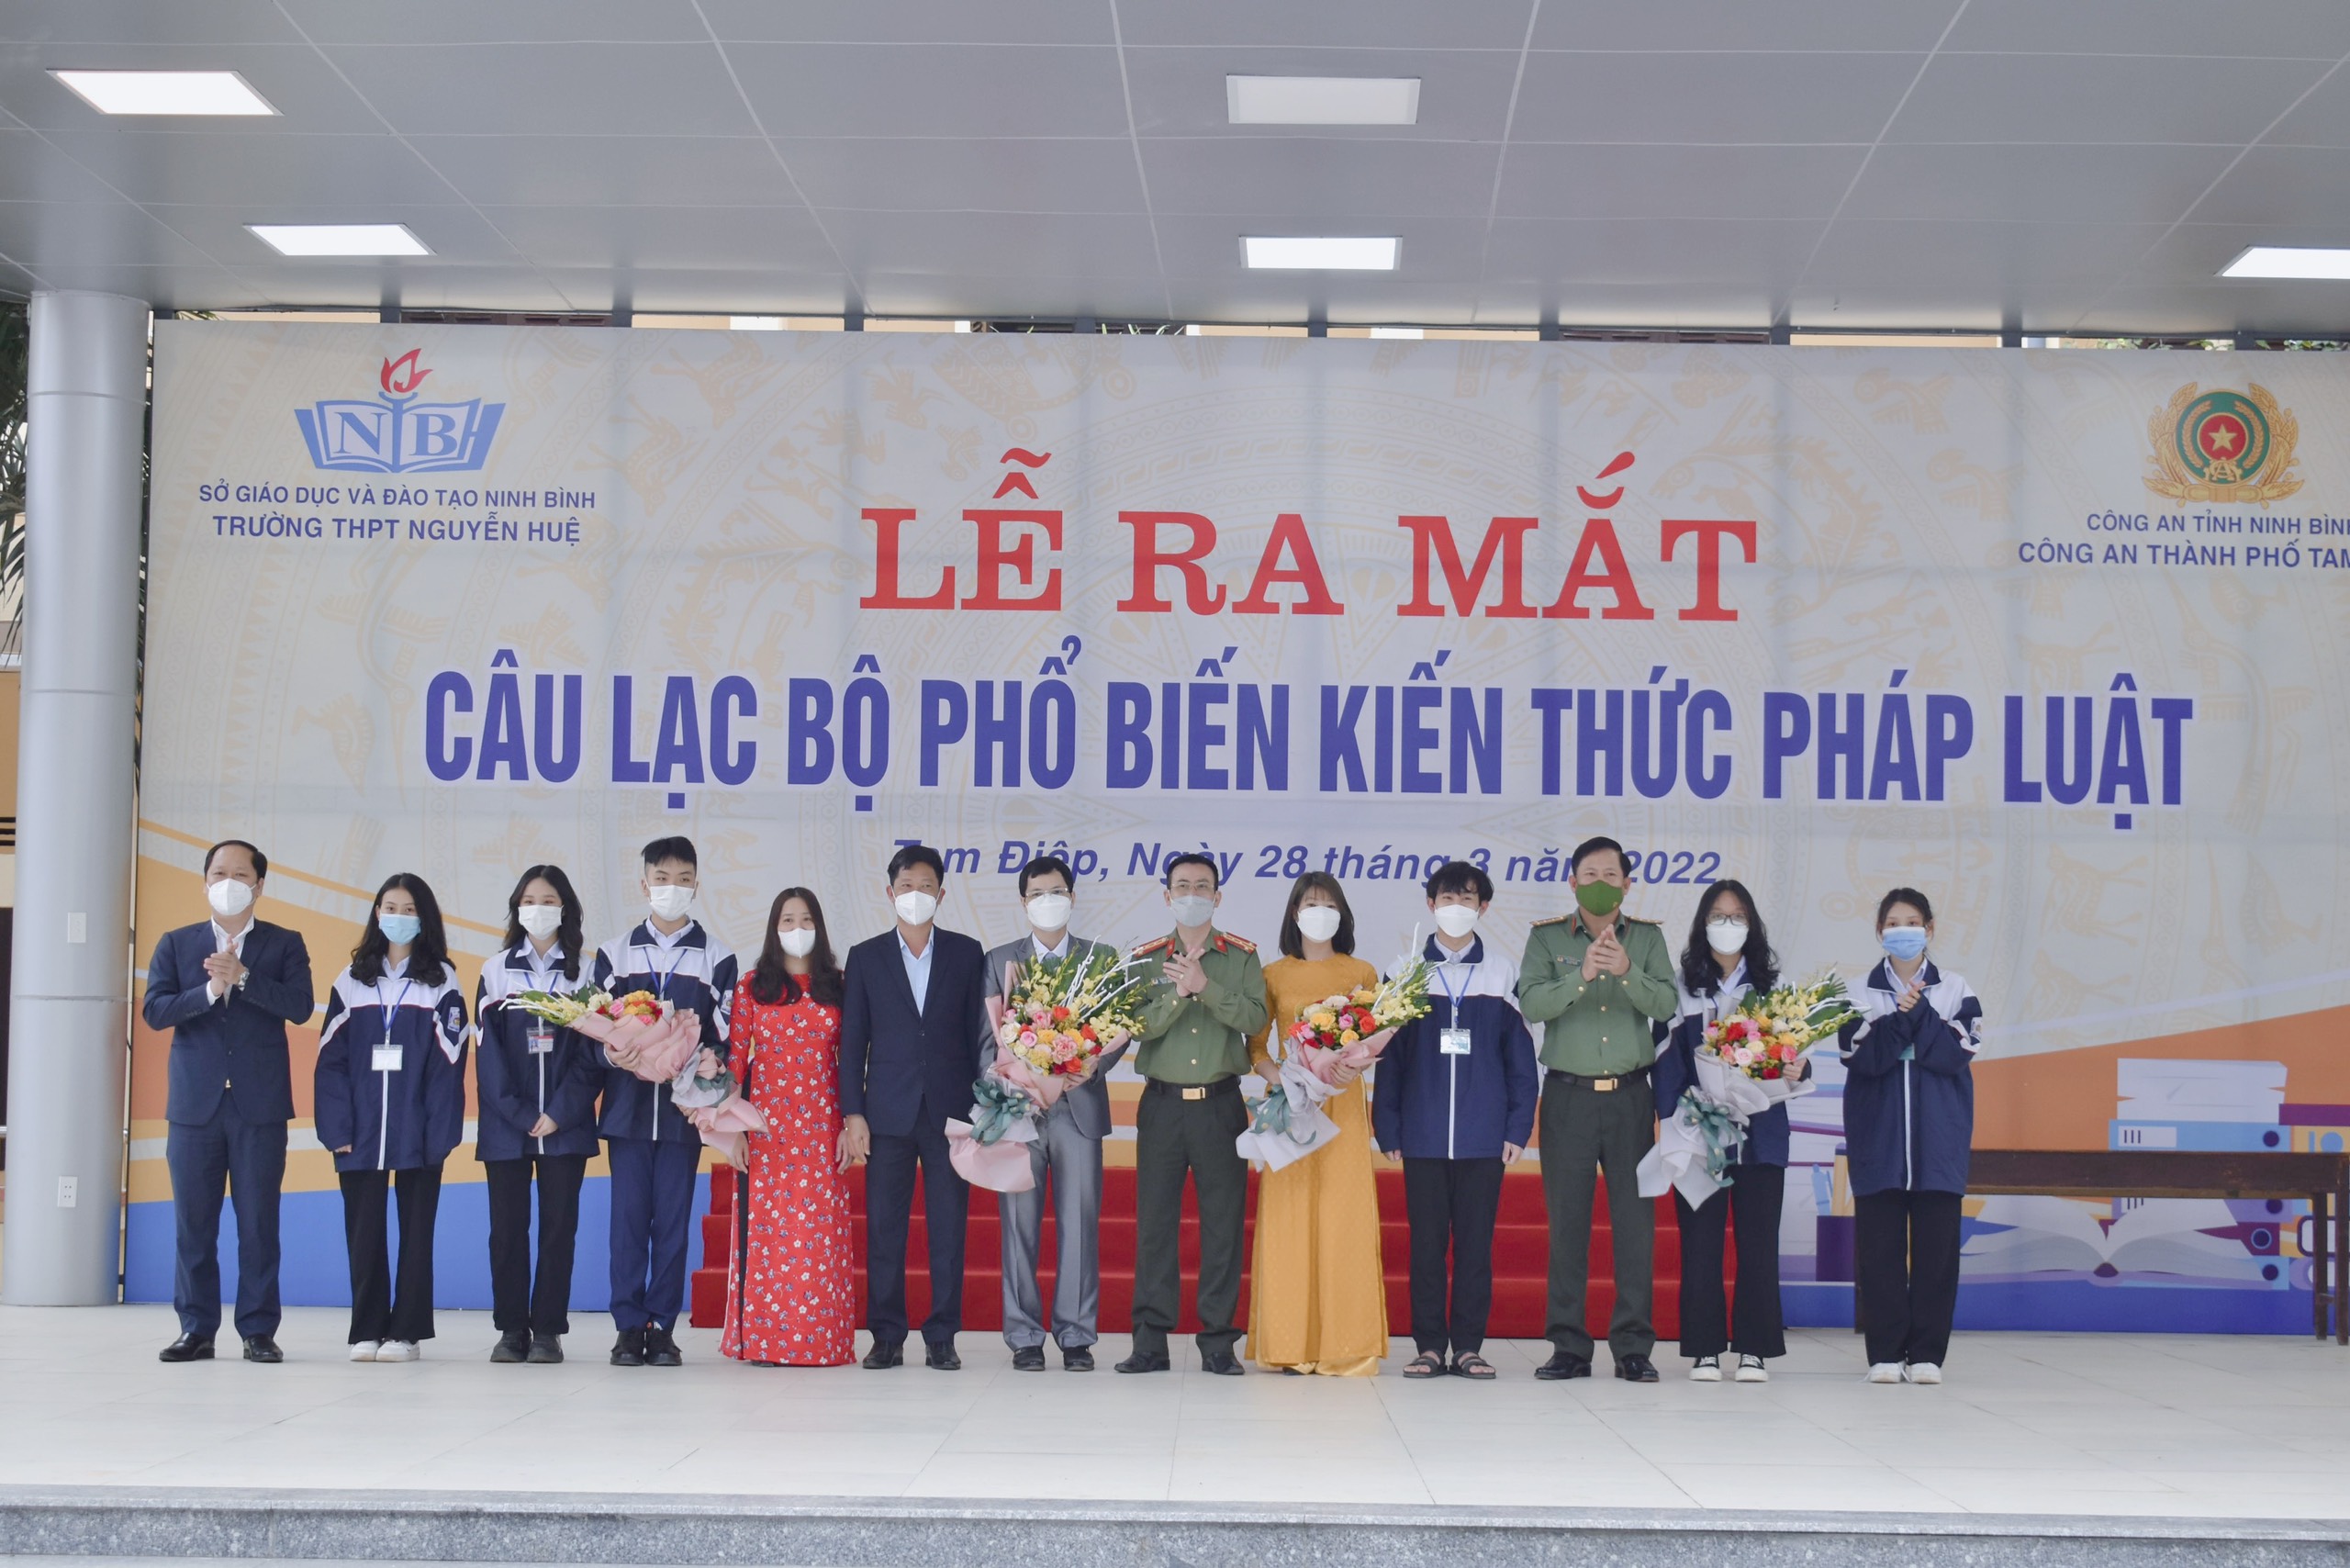 Trường THPT Nguyễn Huệ  tổ chức  Lễ ra mắt “Câu lạc bộ phổ biến kiến thức pháp luật” trong học sinh